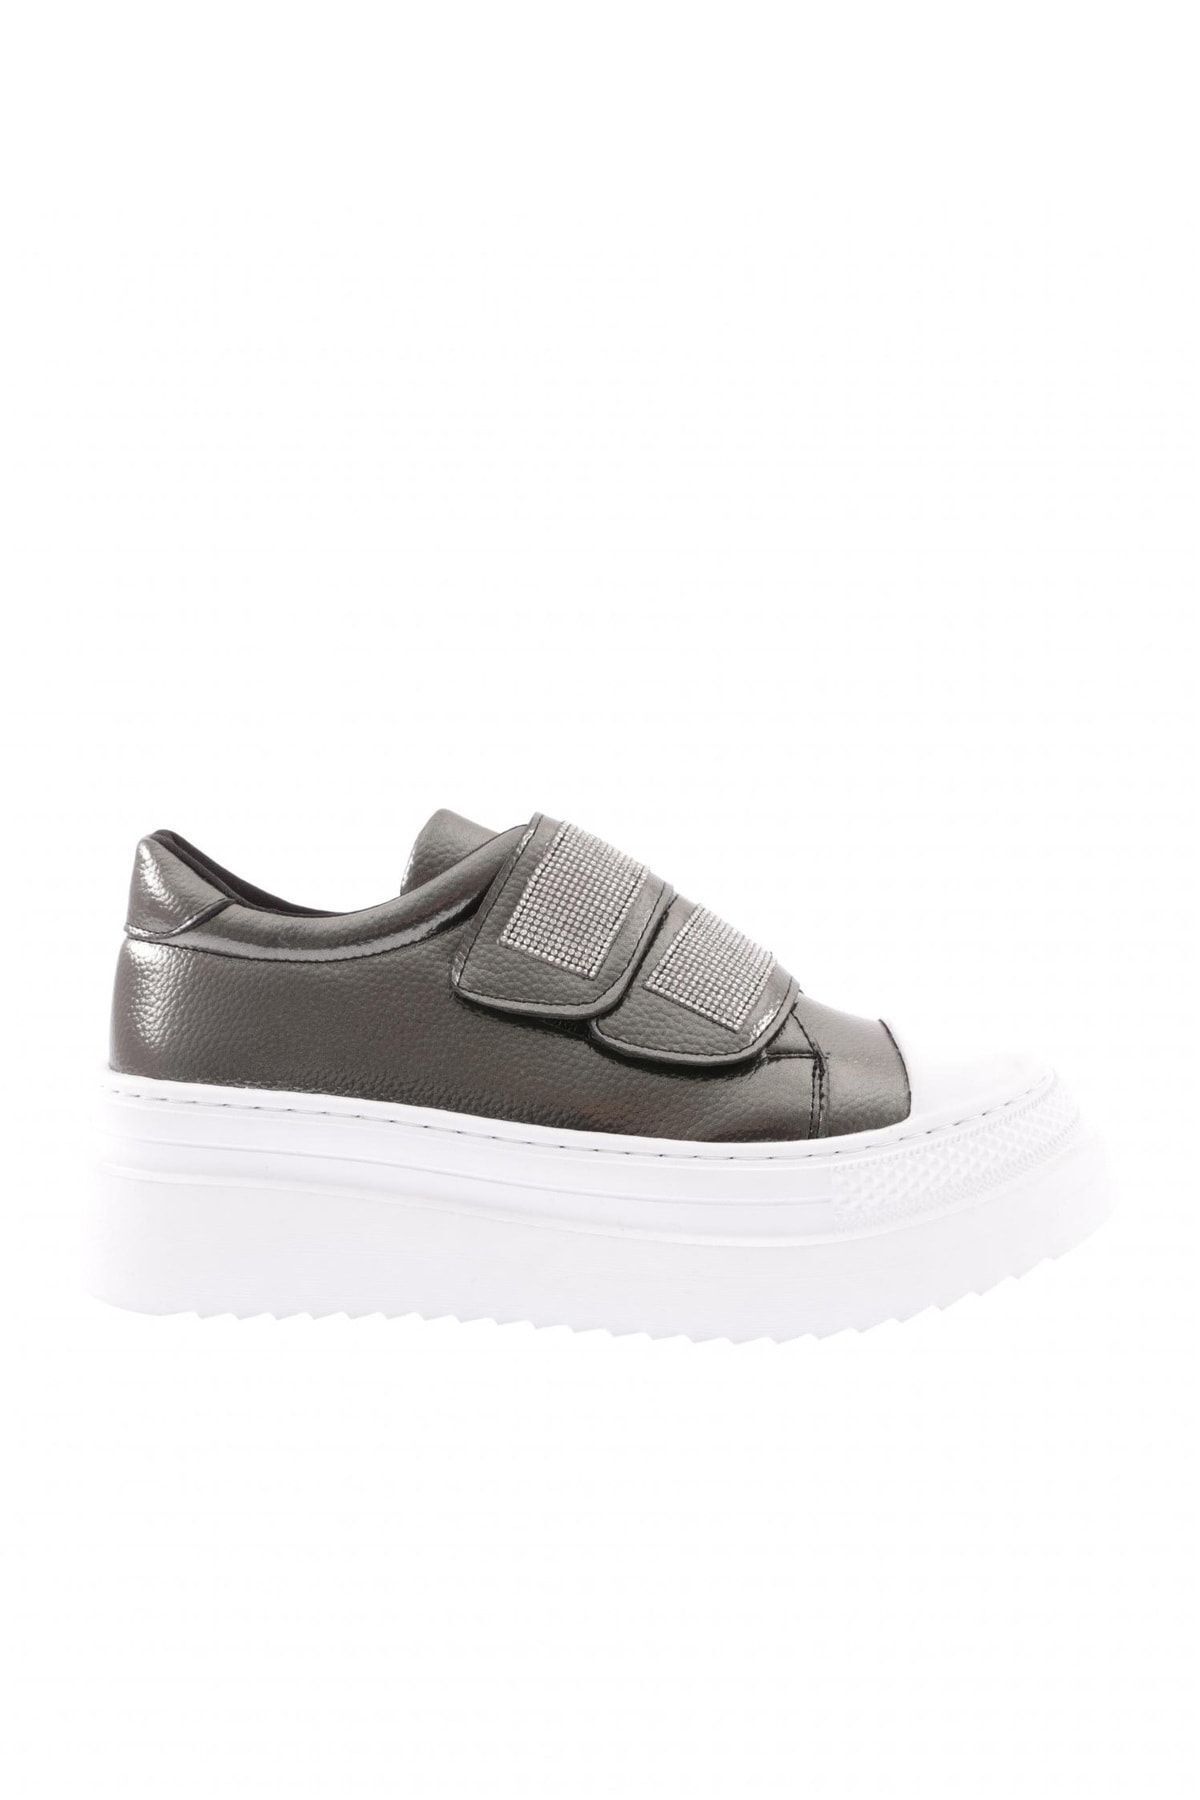 Dgn 898-23y Kadın 2 Cirtli Bantlari Silver Taşlı Kalın Taban Sneaker Ayakkabı Platin Rolax Beyaz